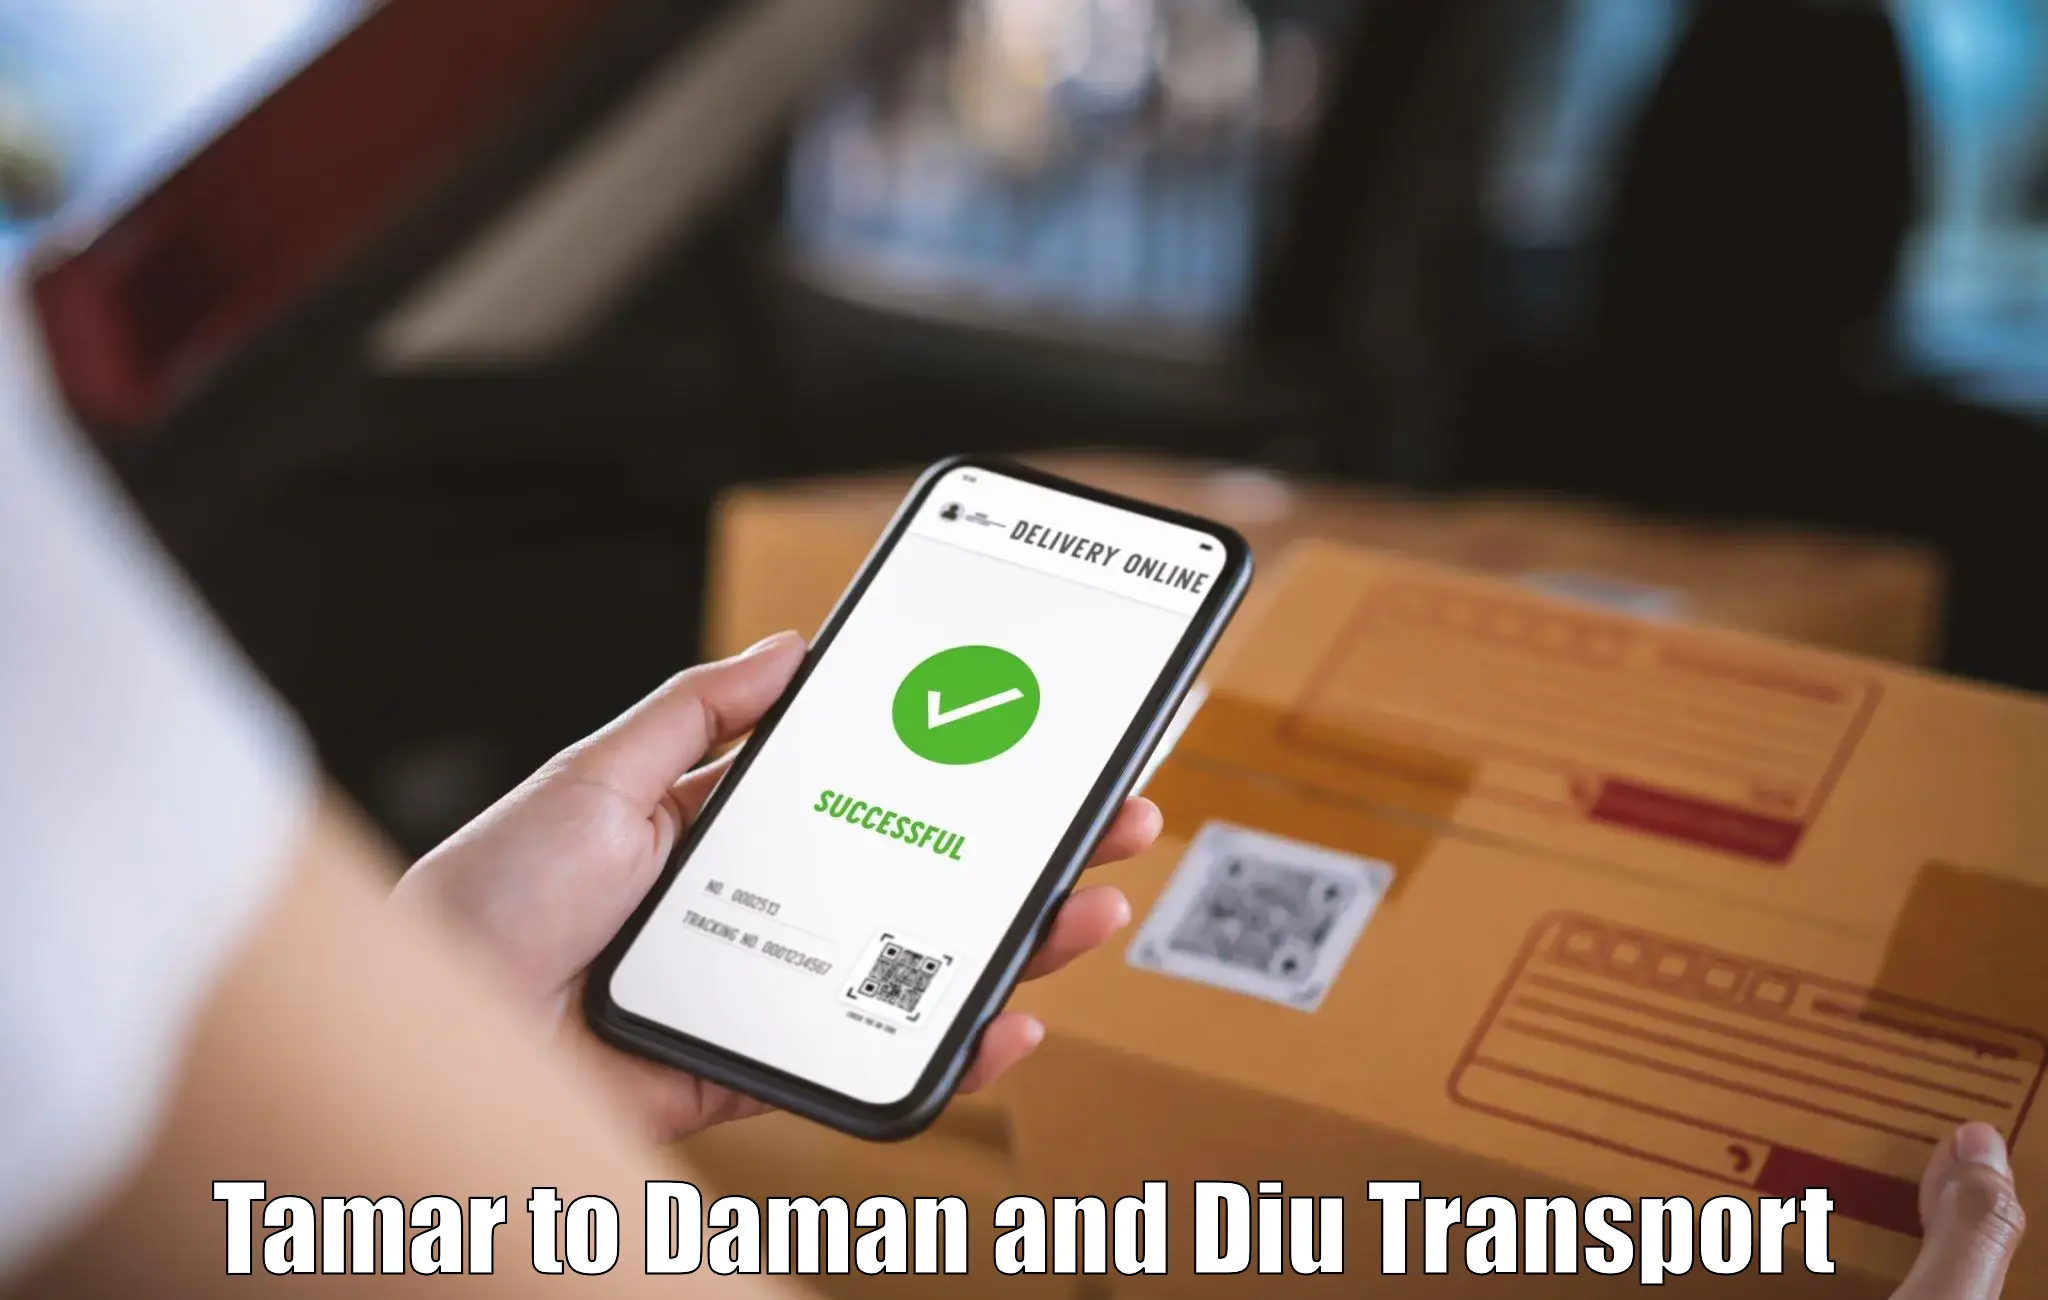 Transportation services Tamar to Daman and Diu